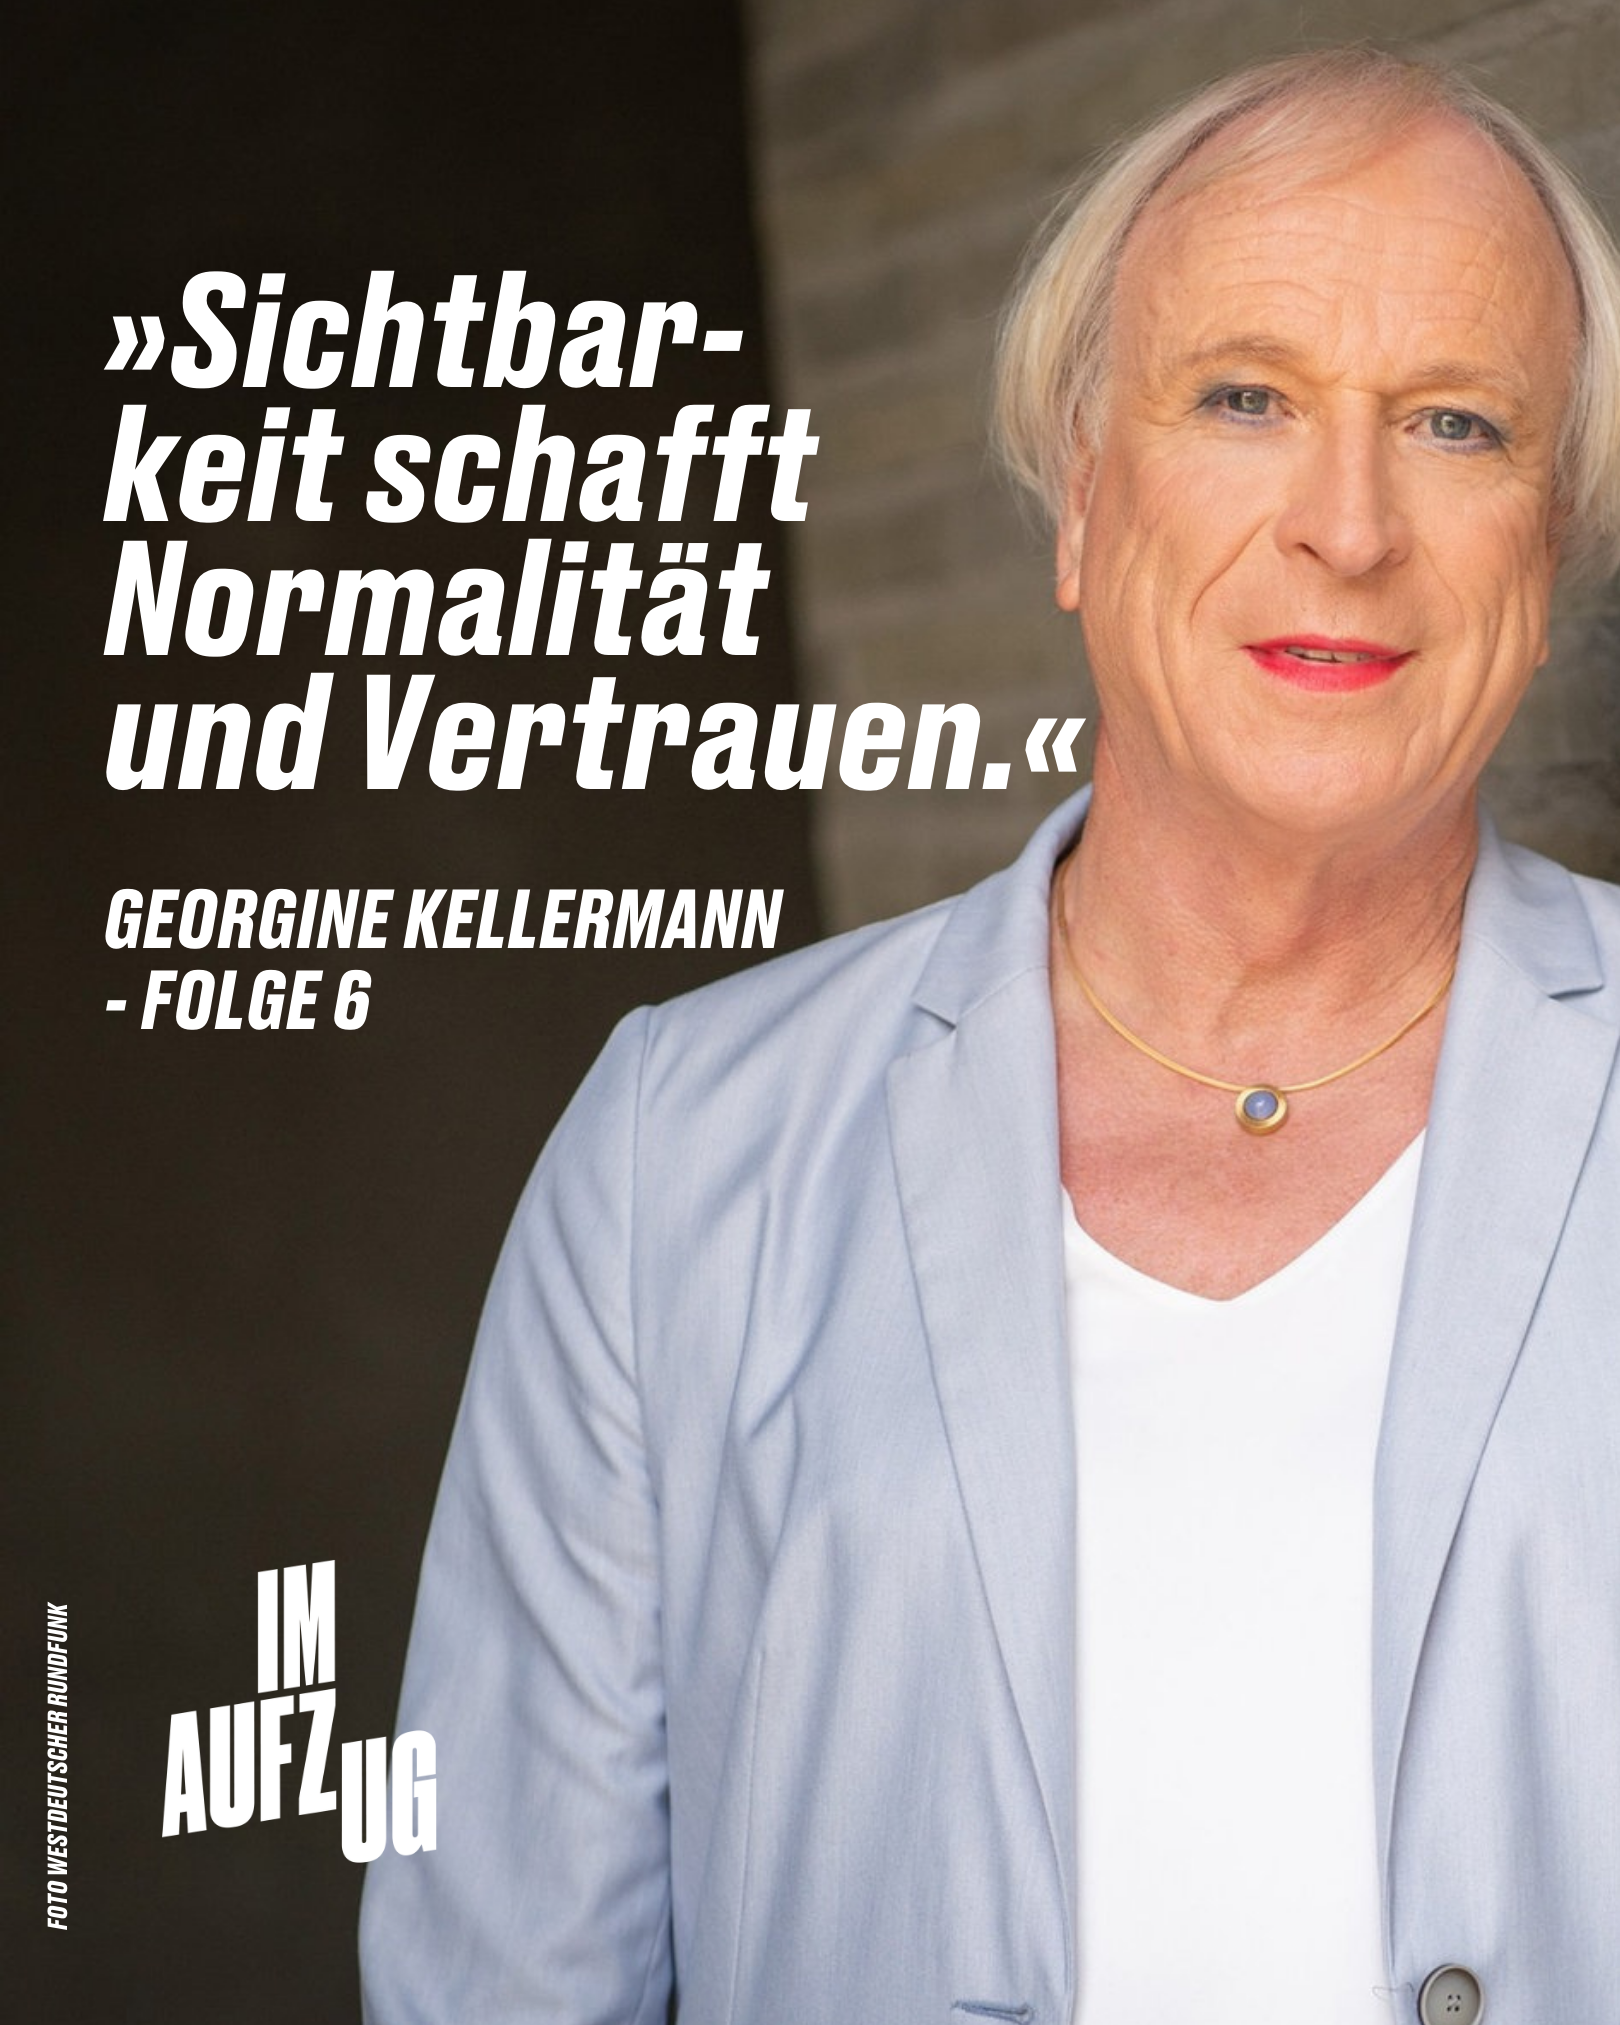 Podcast: „Im Aufzug“ – Folge 06: Georgine Kellermann, bist du endlich angekommen?